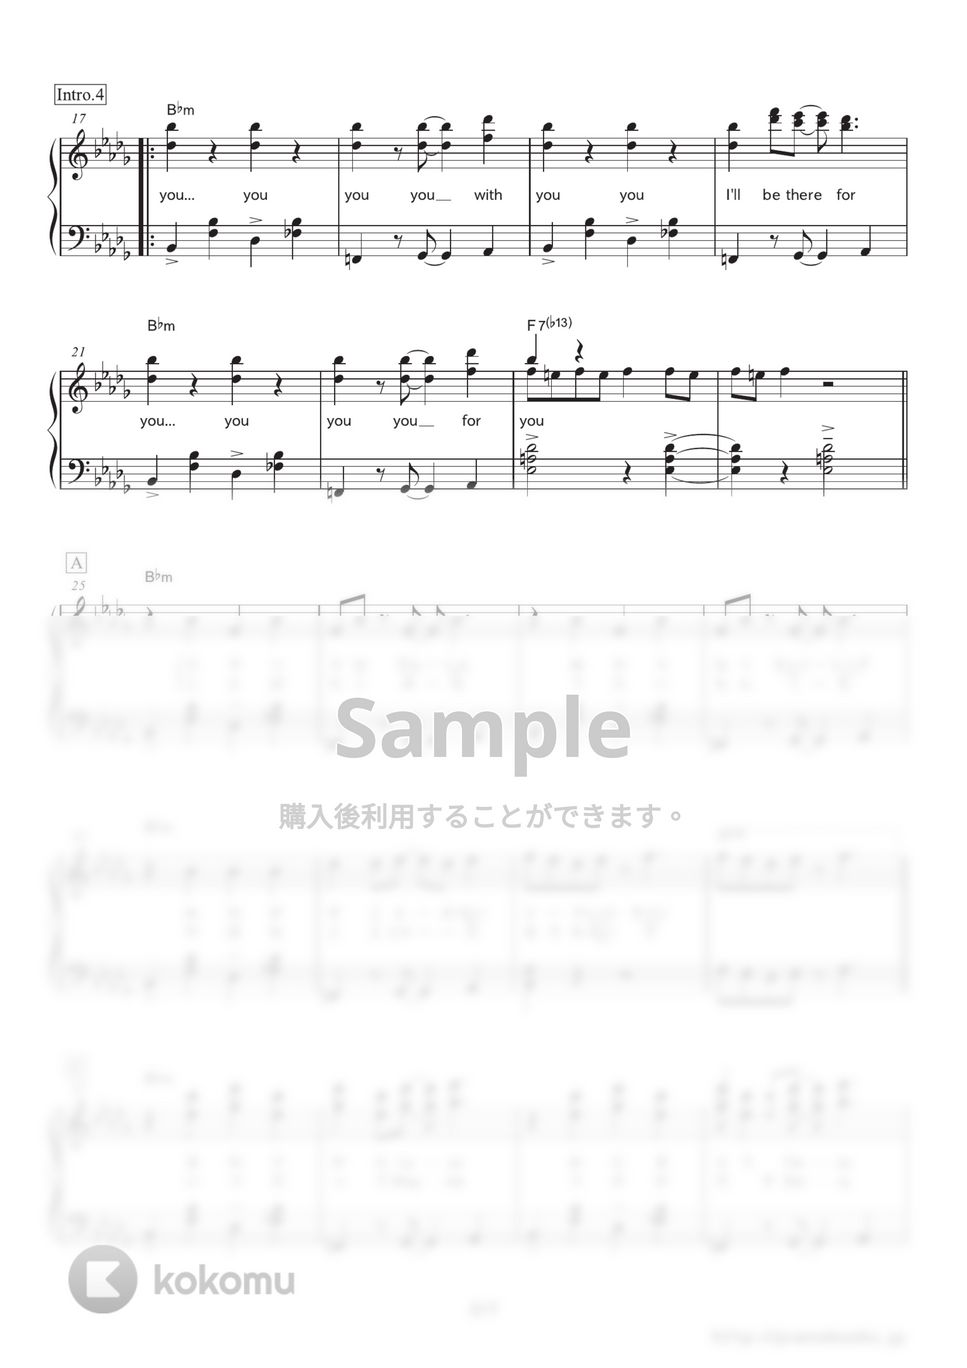 嵐 - I'll be there (ドラマ『貴族探偵』主題歌) by ピアノの本棚